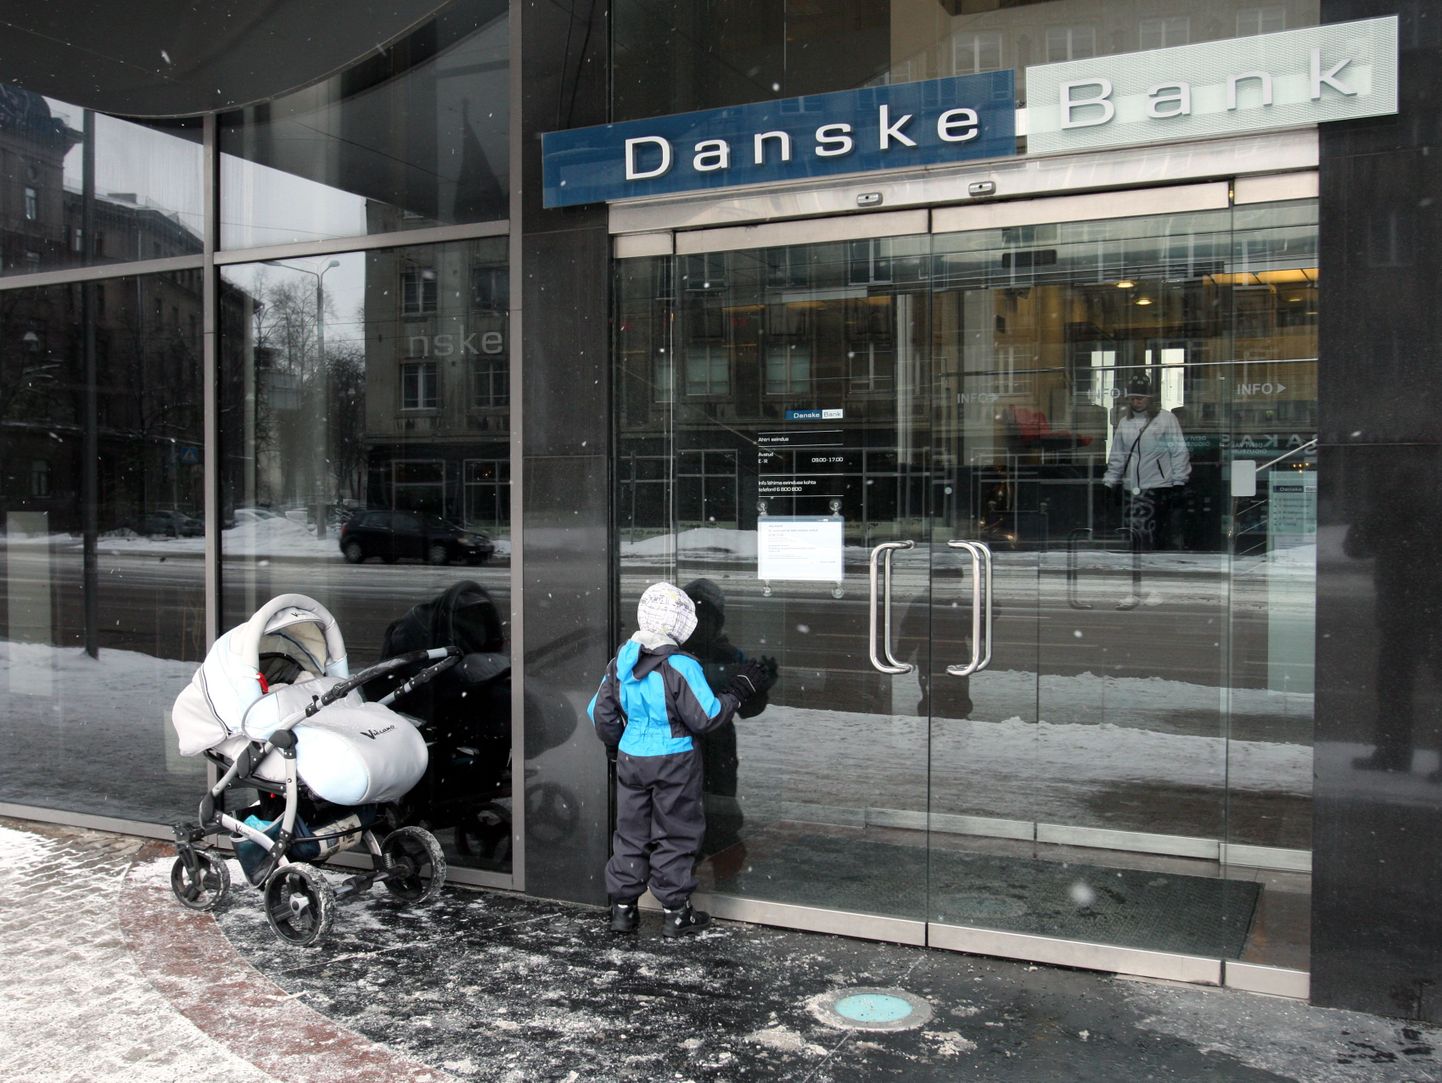 Danske Banki esindus